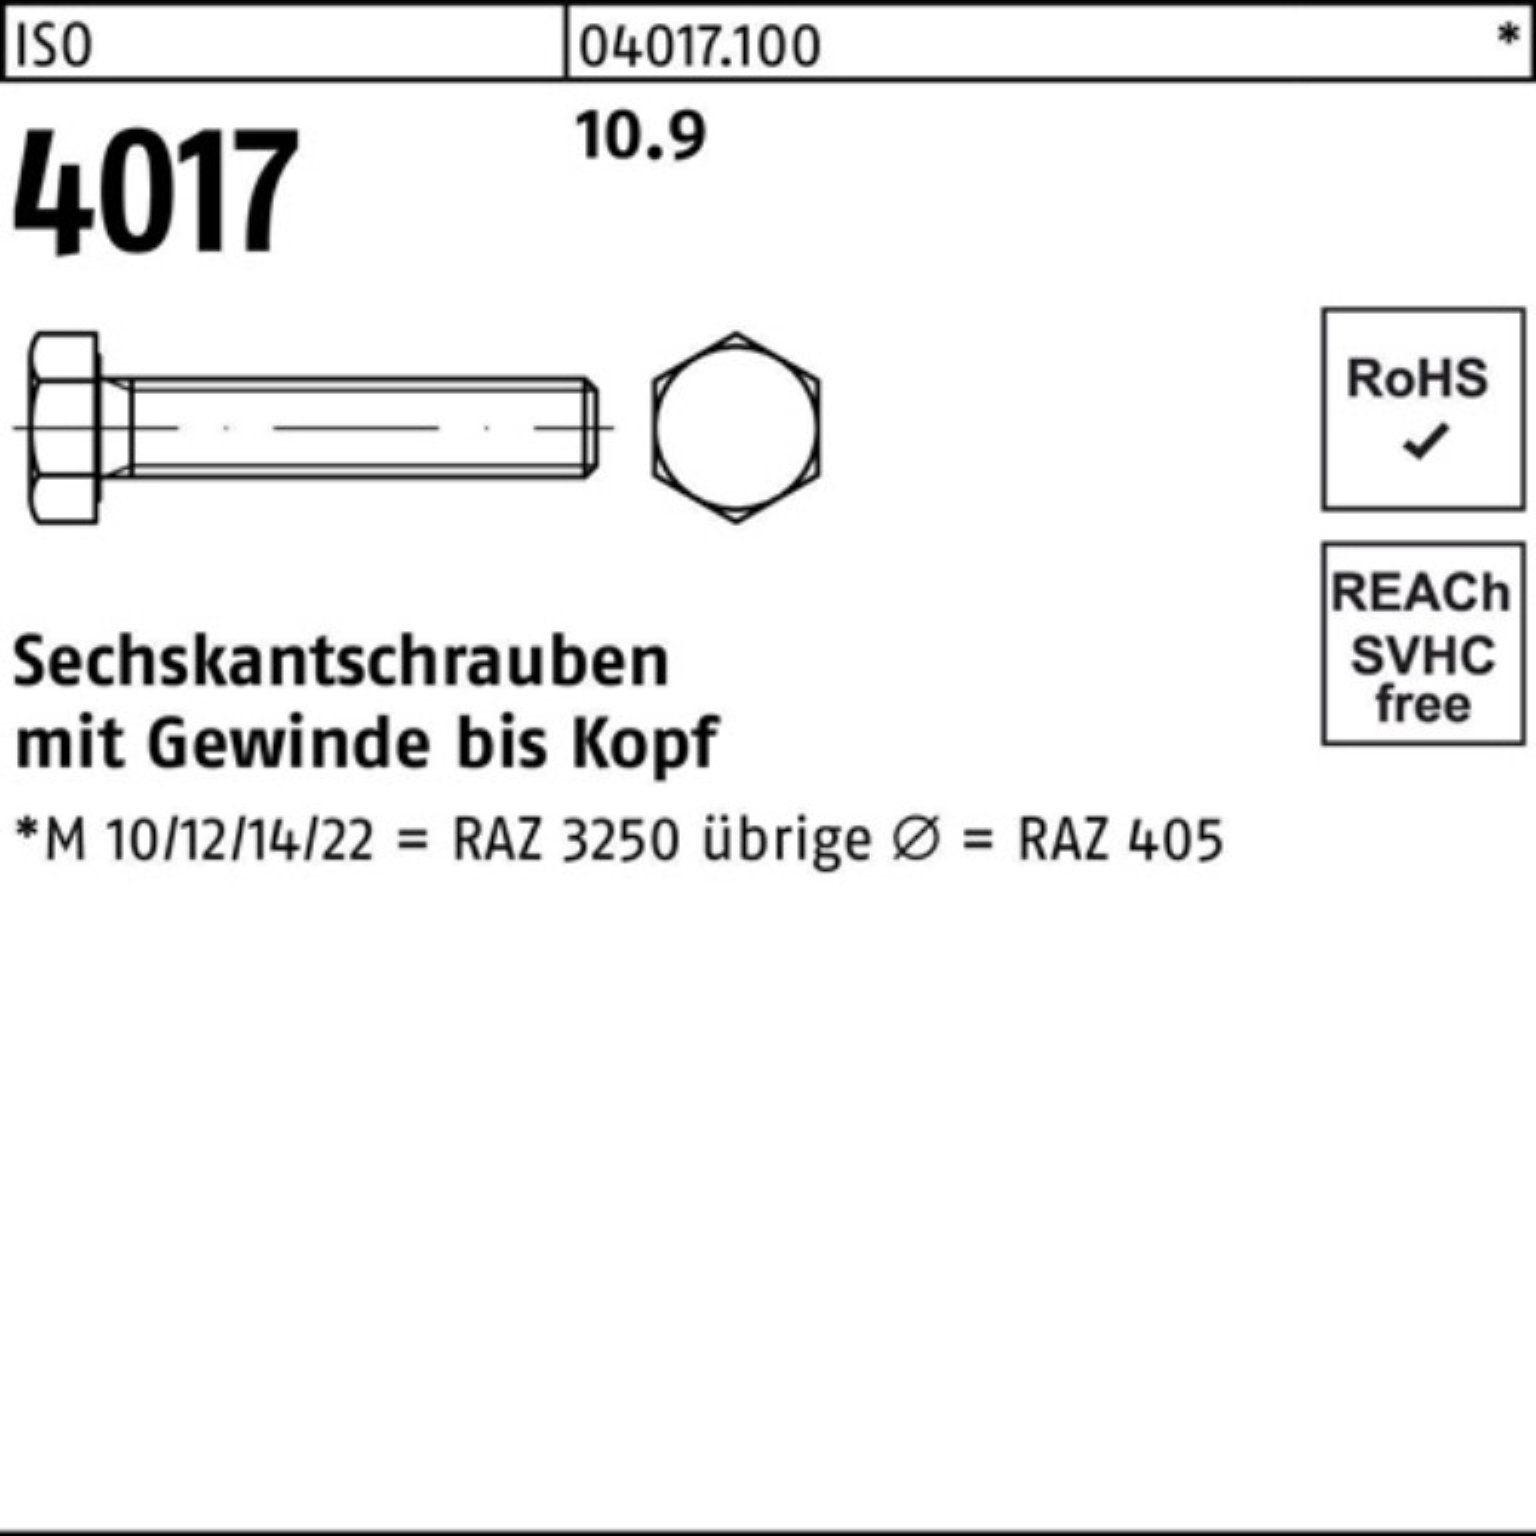 VG M36x Bufab 4017 100er ISO Pack Sechskantschraube 40 1 ISO Stück 10.9 110 Sechskantschraube